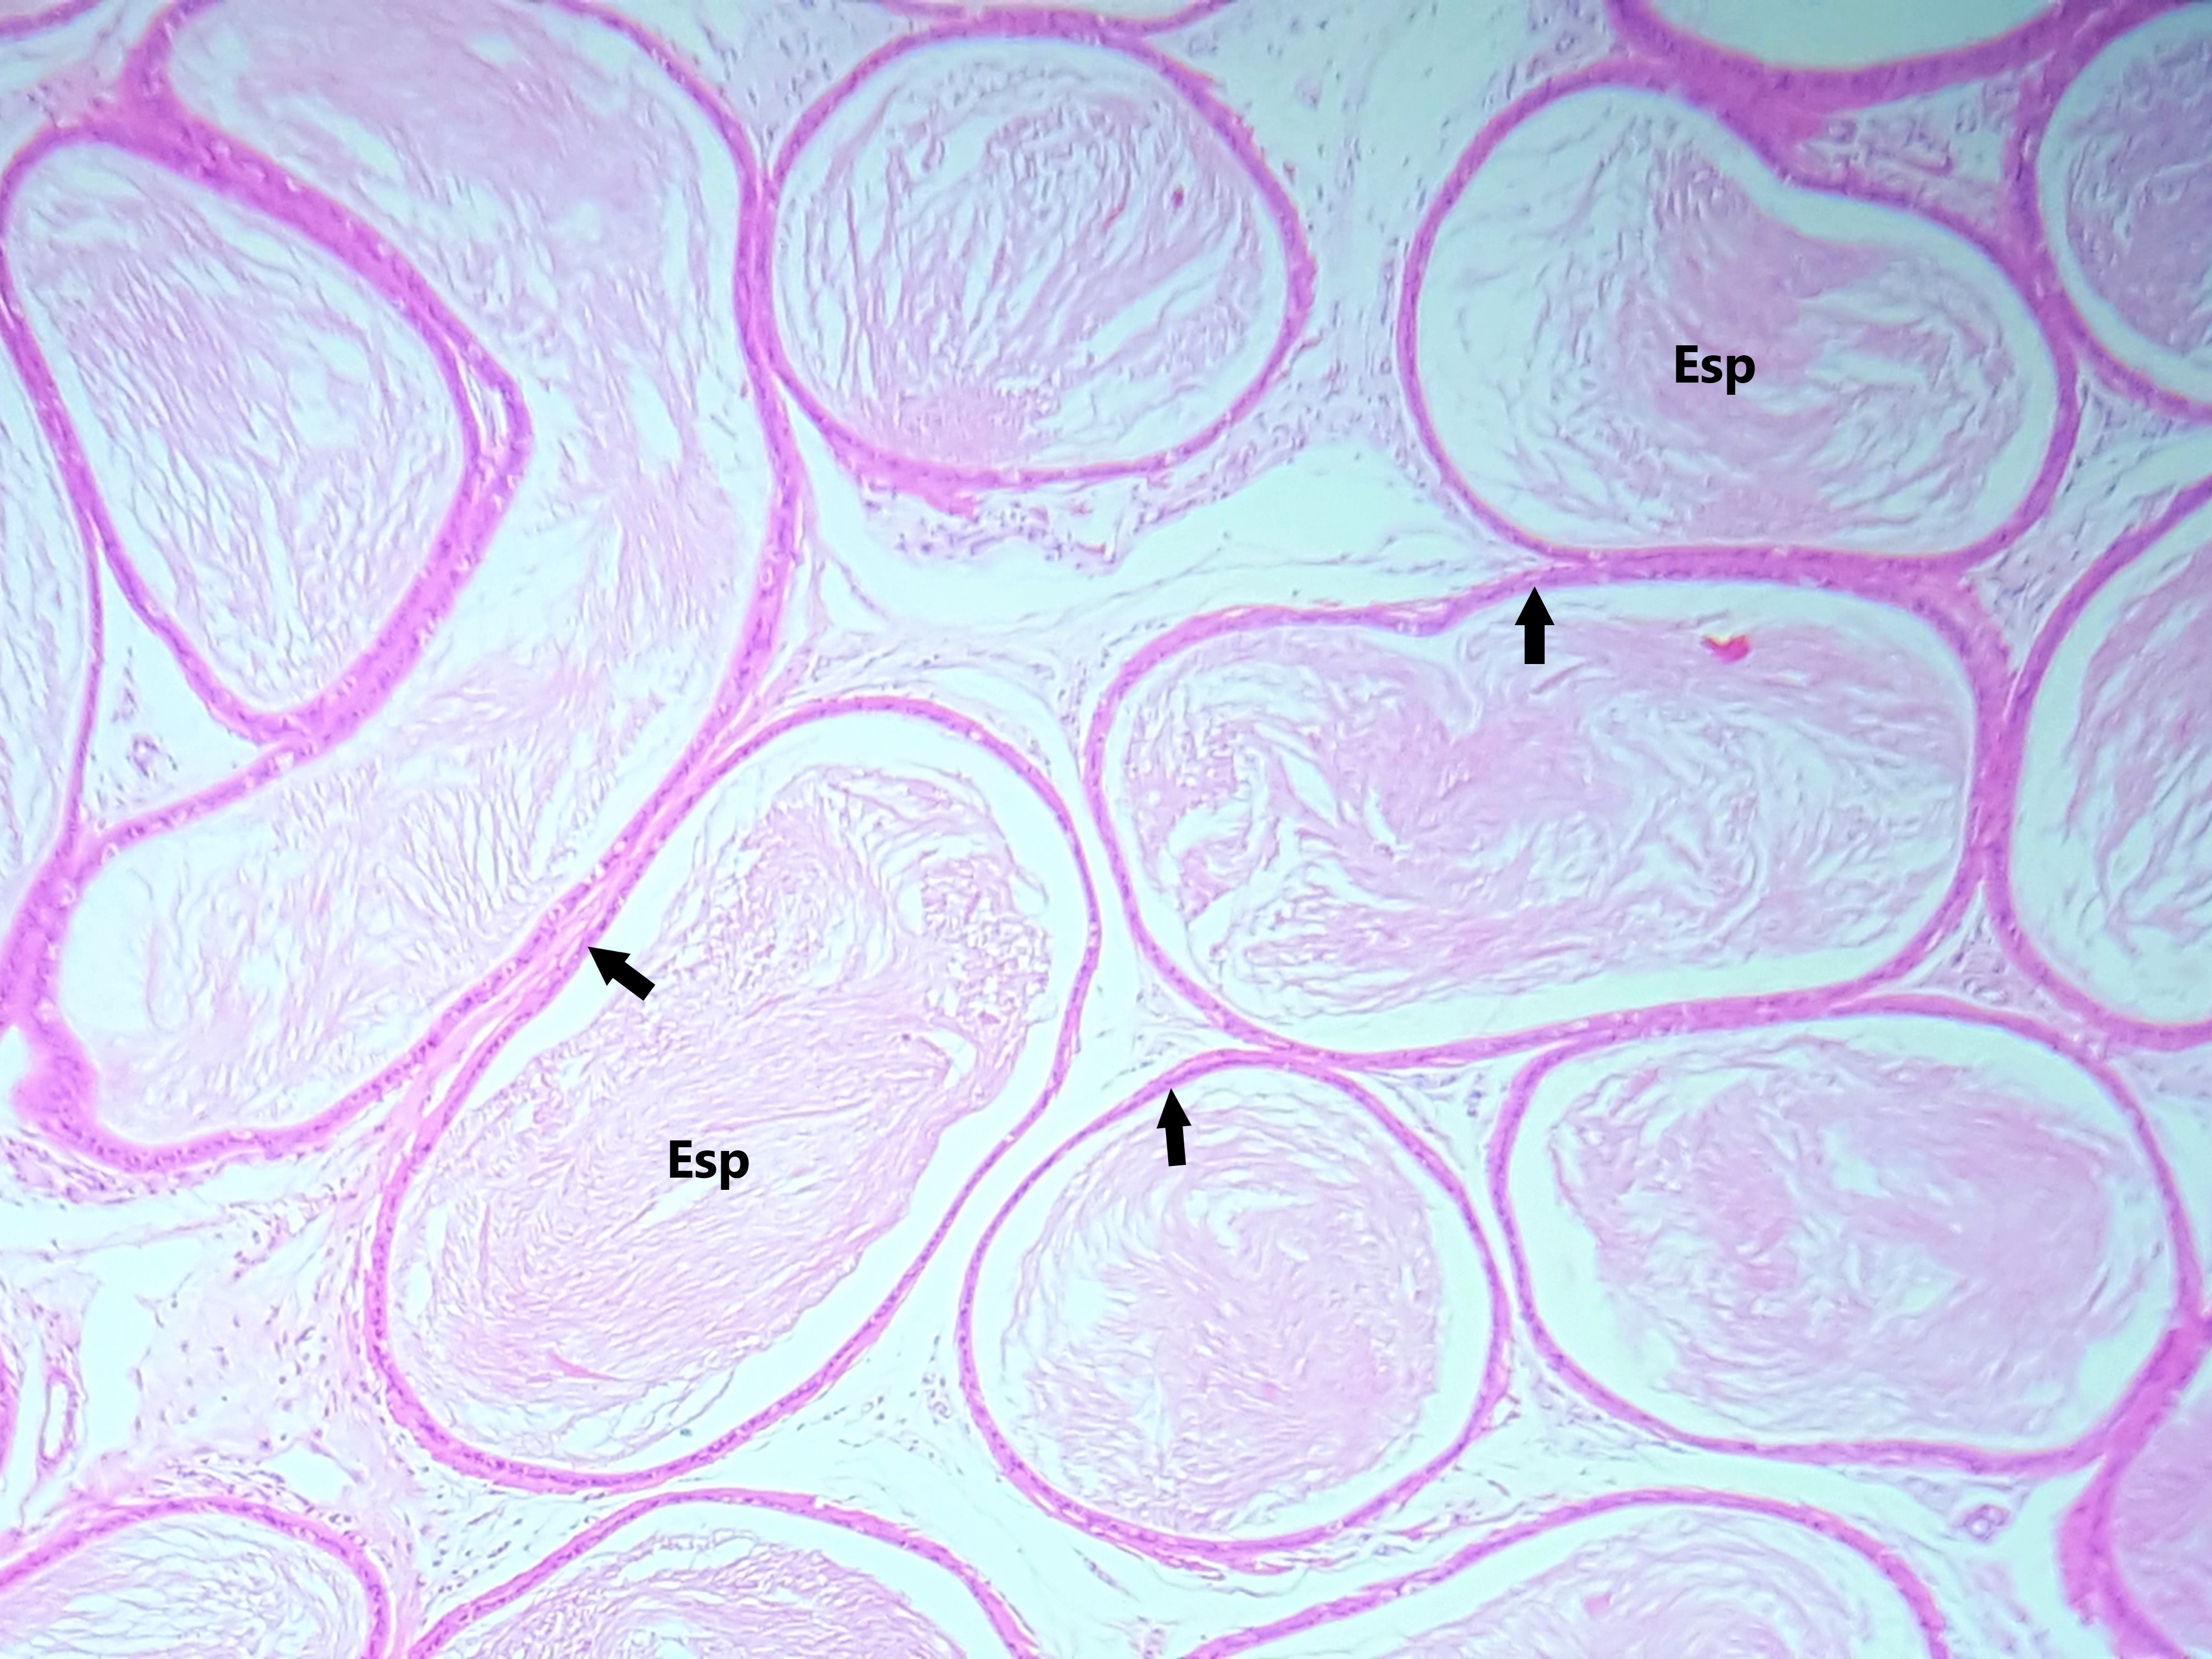 Lâmina: Epidídimo (H&E - Aumento: 100x). Fotomicrografia mostrando cortes transversais do ducto epididimário. As setas apontam para o tecido epitelial pseudoestratificado colunar com estereocílios. É possível observar espermatozóides (Esp) no lúmen do ducto.